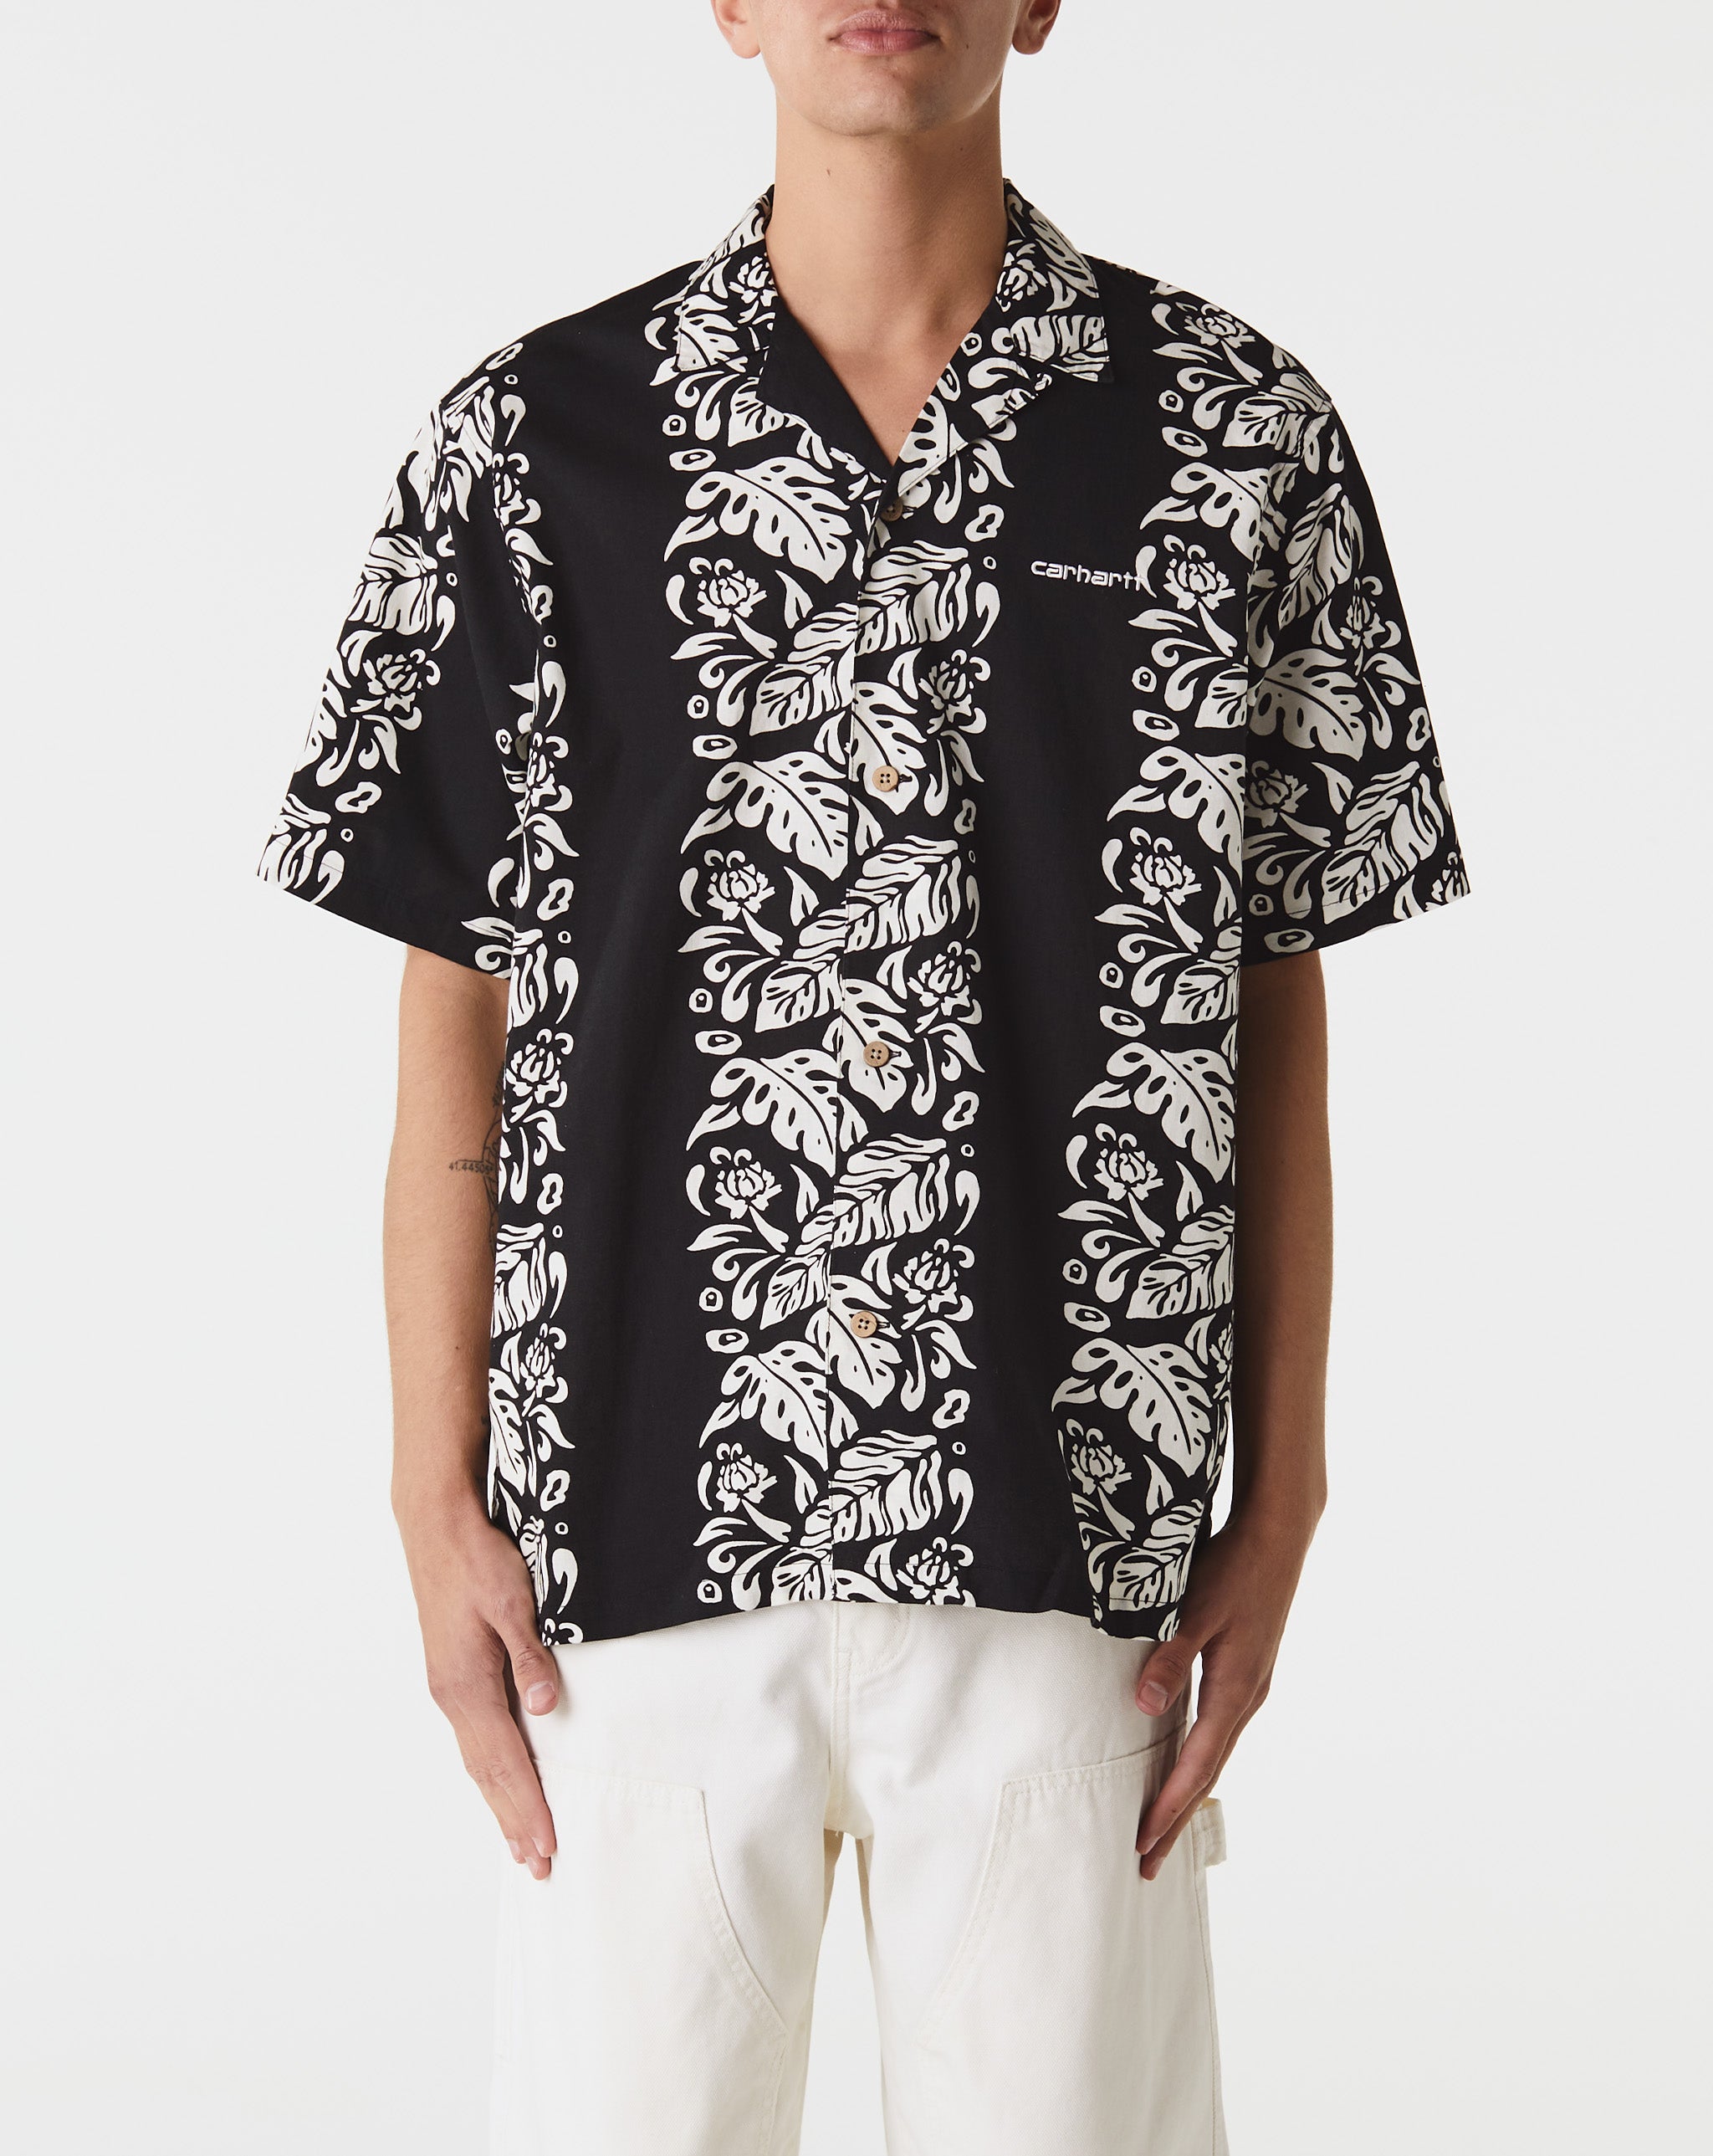 Carhartt WIP Floral Shirt  - Cheap Urlfreeze Jordan outlet